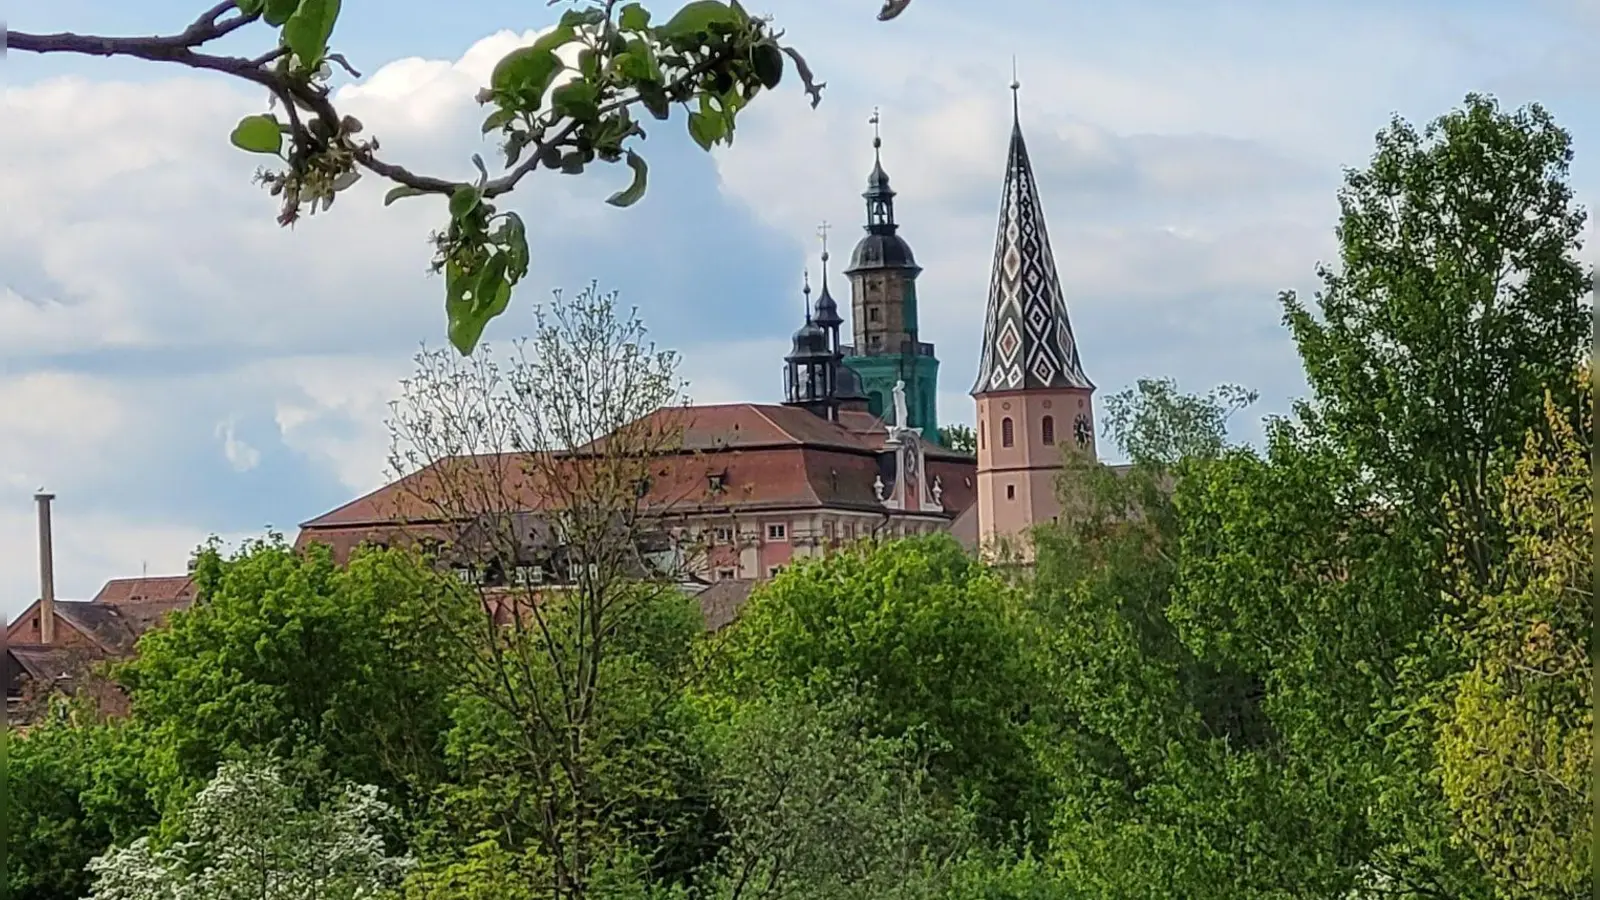 Der Turm der Stadtkirche ragt empor und ist weithin sichtbar. Er prägt die Bad Windsheimer Silhouette nachhaltig. (Foto: Nina Daebel)